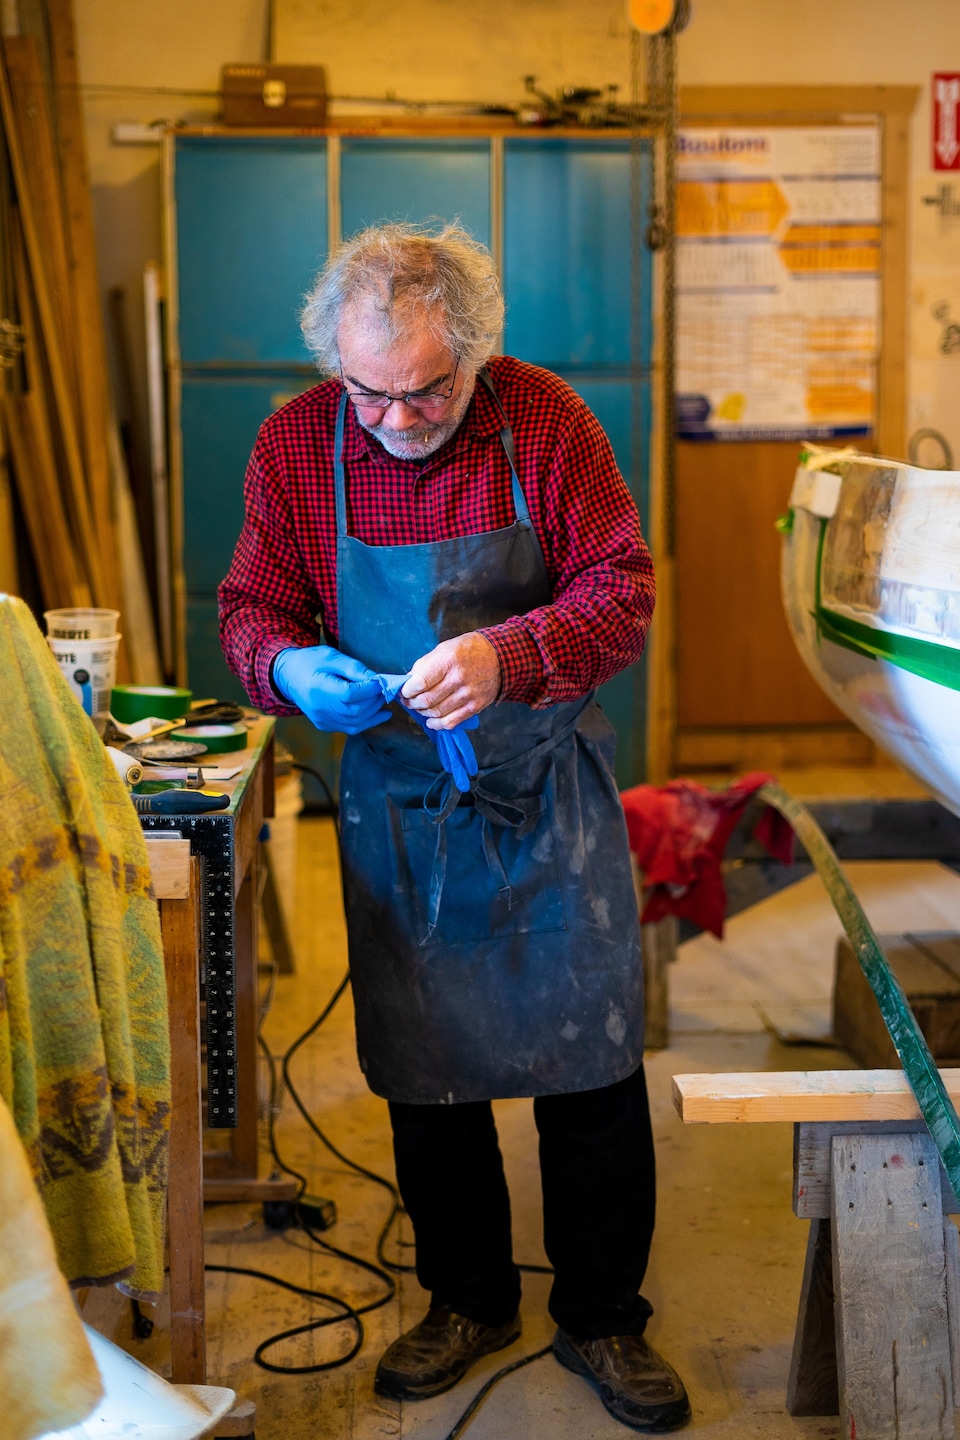 Daniel St-Pierre est debout dans son atelier et enfile des gants.